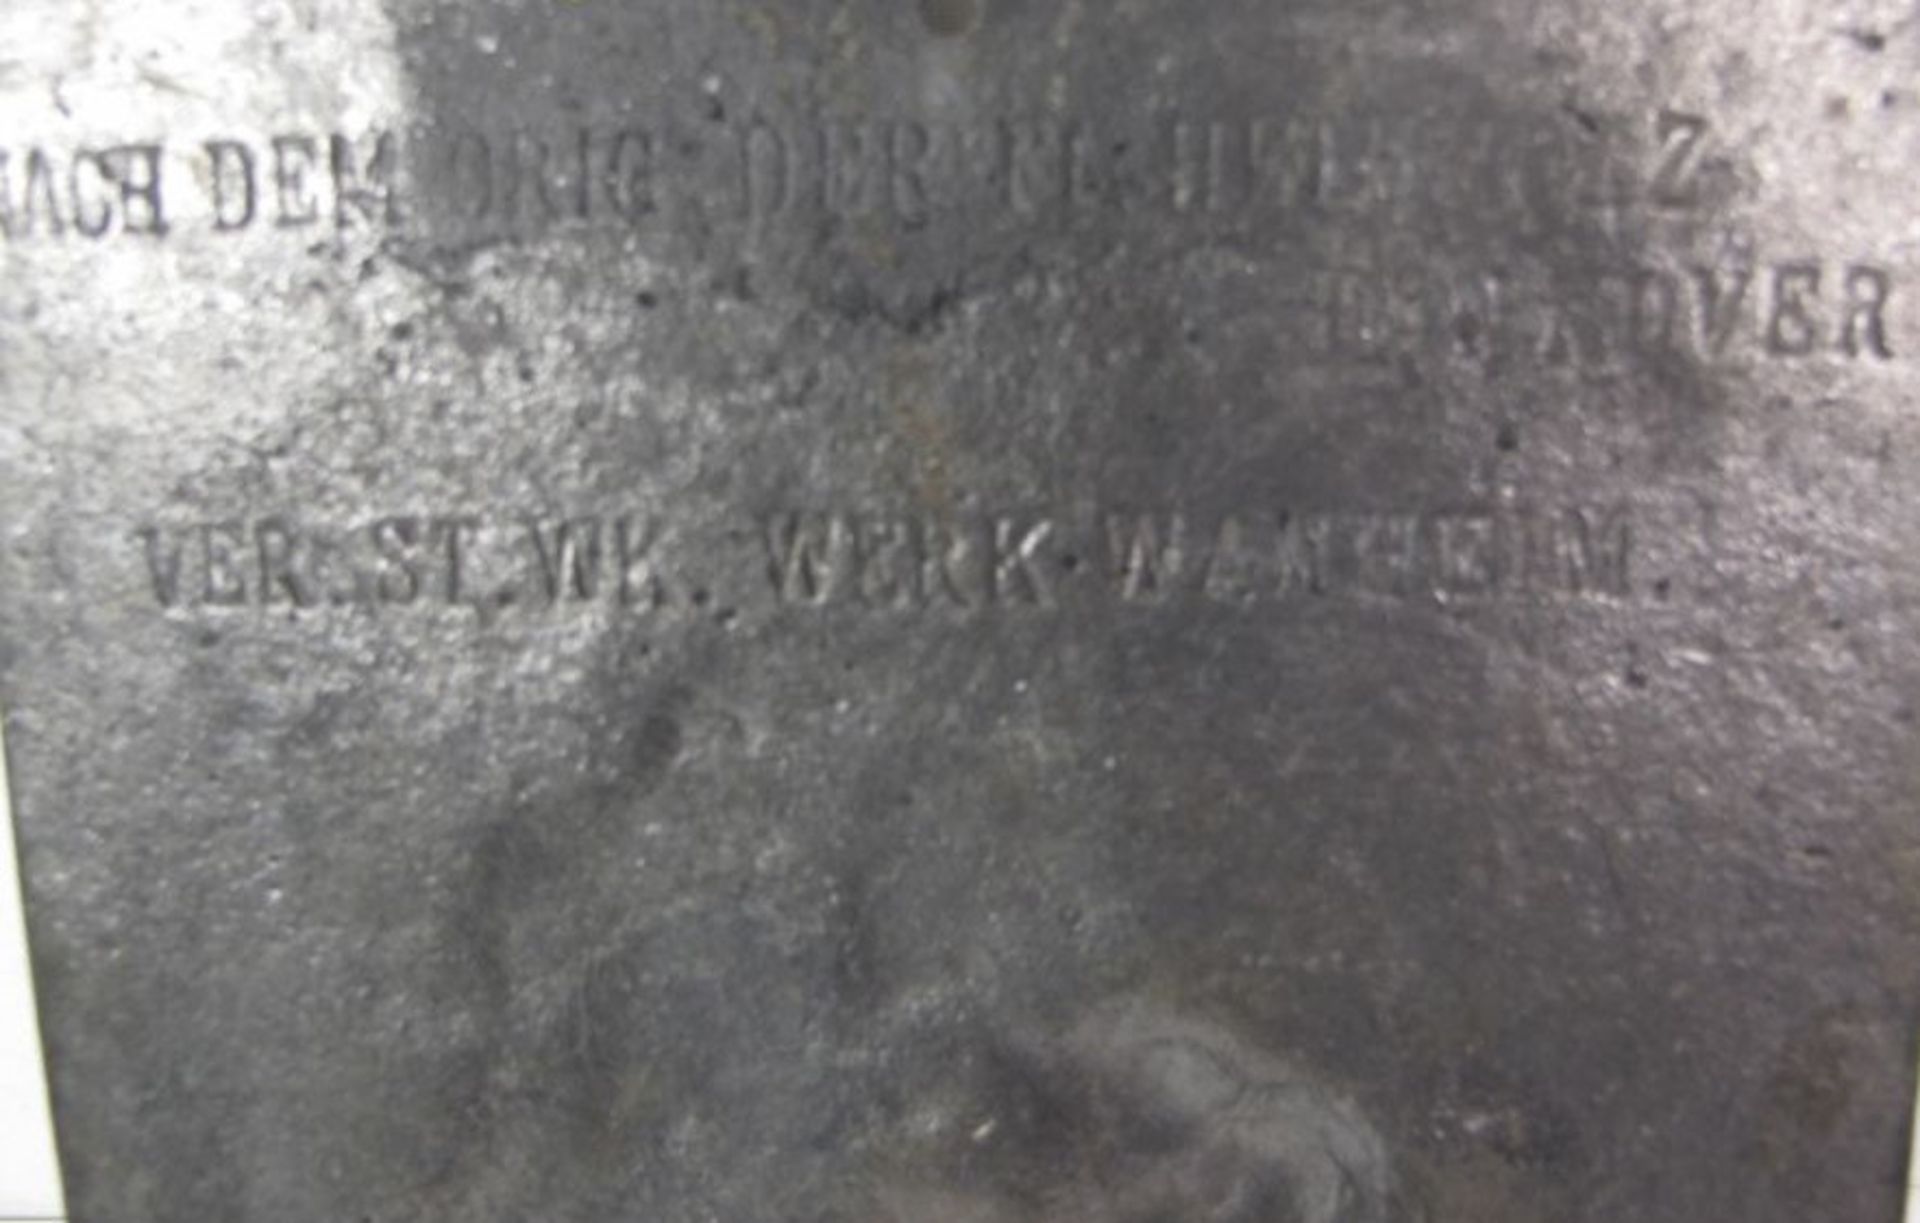 Reliefplatte, verso gemarkt "Nach dem Orig. der FL-Herinholz Hannover- Ver. St. WK. Werk Wanheim", - Bild 2 aus 2